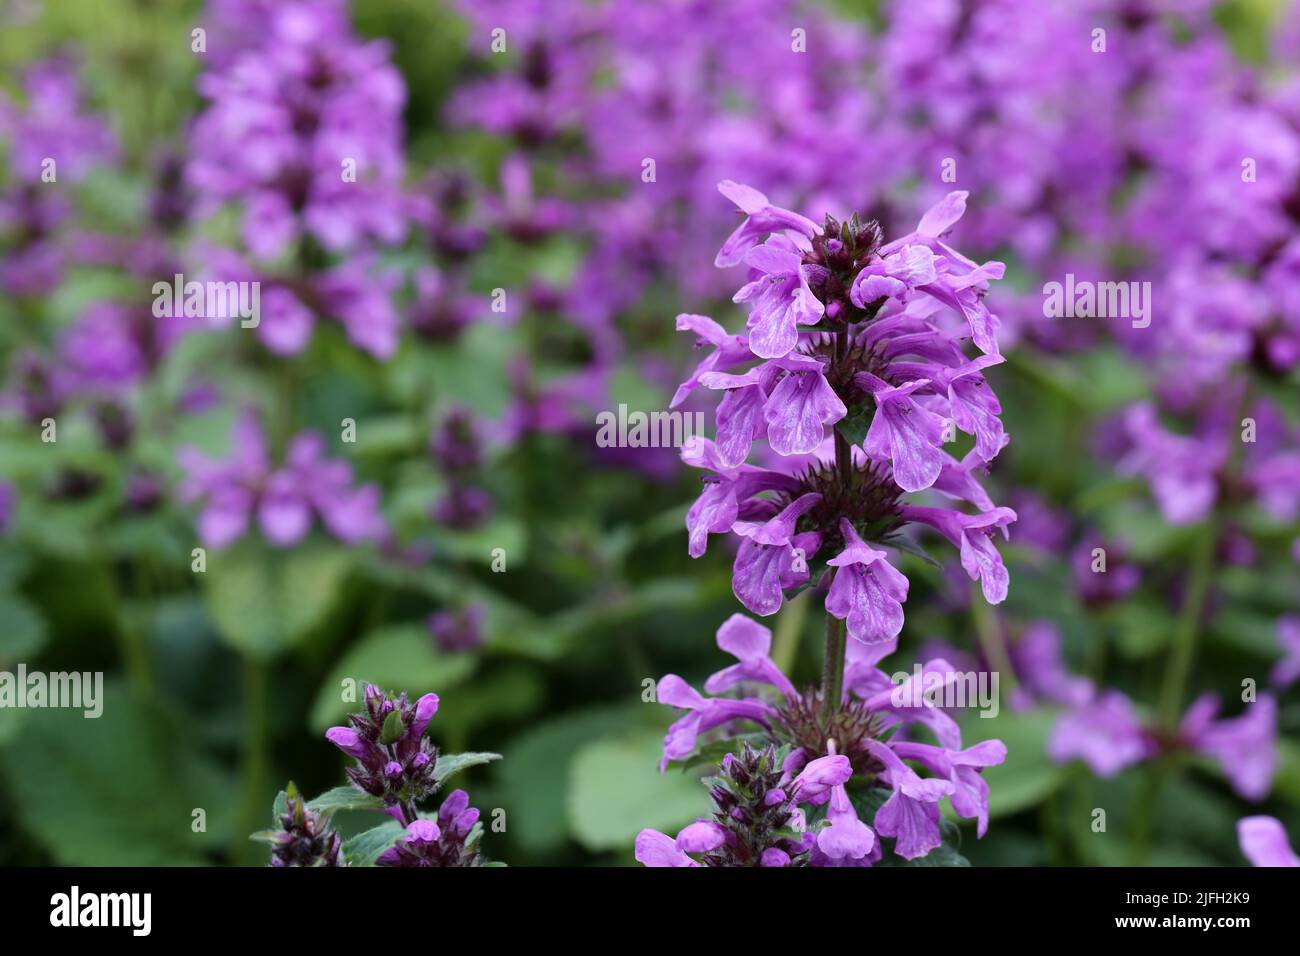 Abbondanza di fiori di colore viola in un primo piano con fondo morbido. Bella immagine a colori a tema per l'estate. Foto Stock